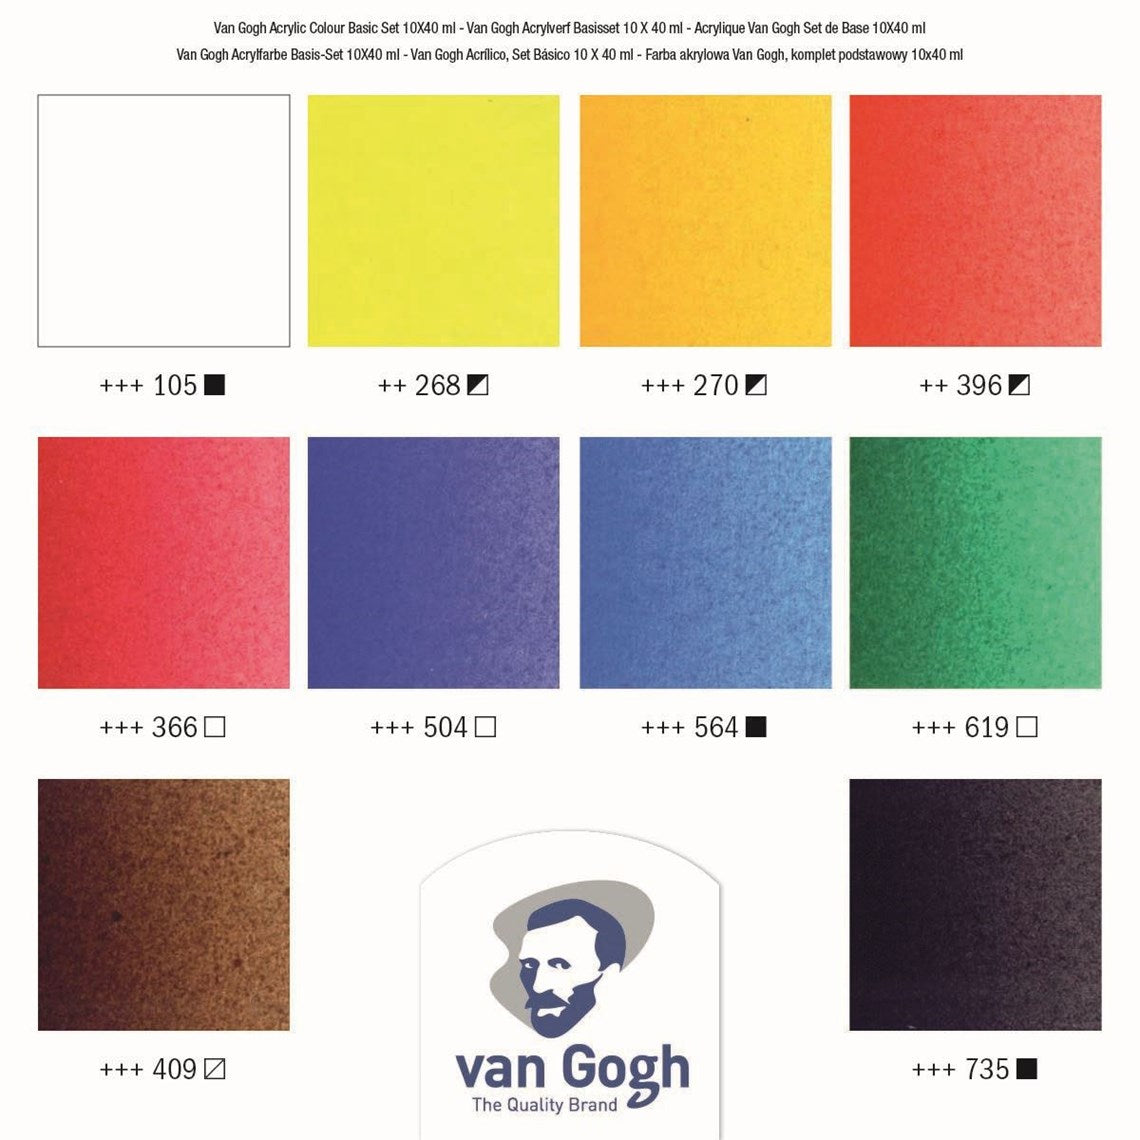 VAN GOGH Basis-Set Acrylfarbe 10 x 40 ml